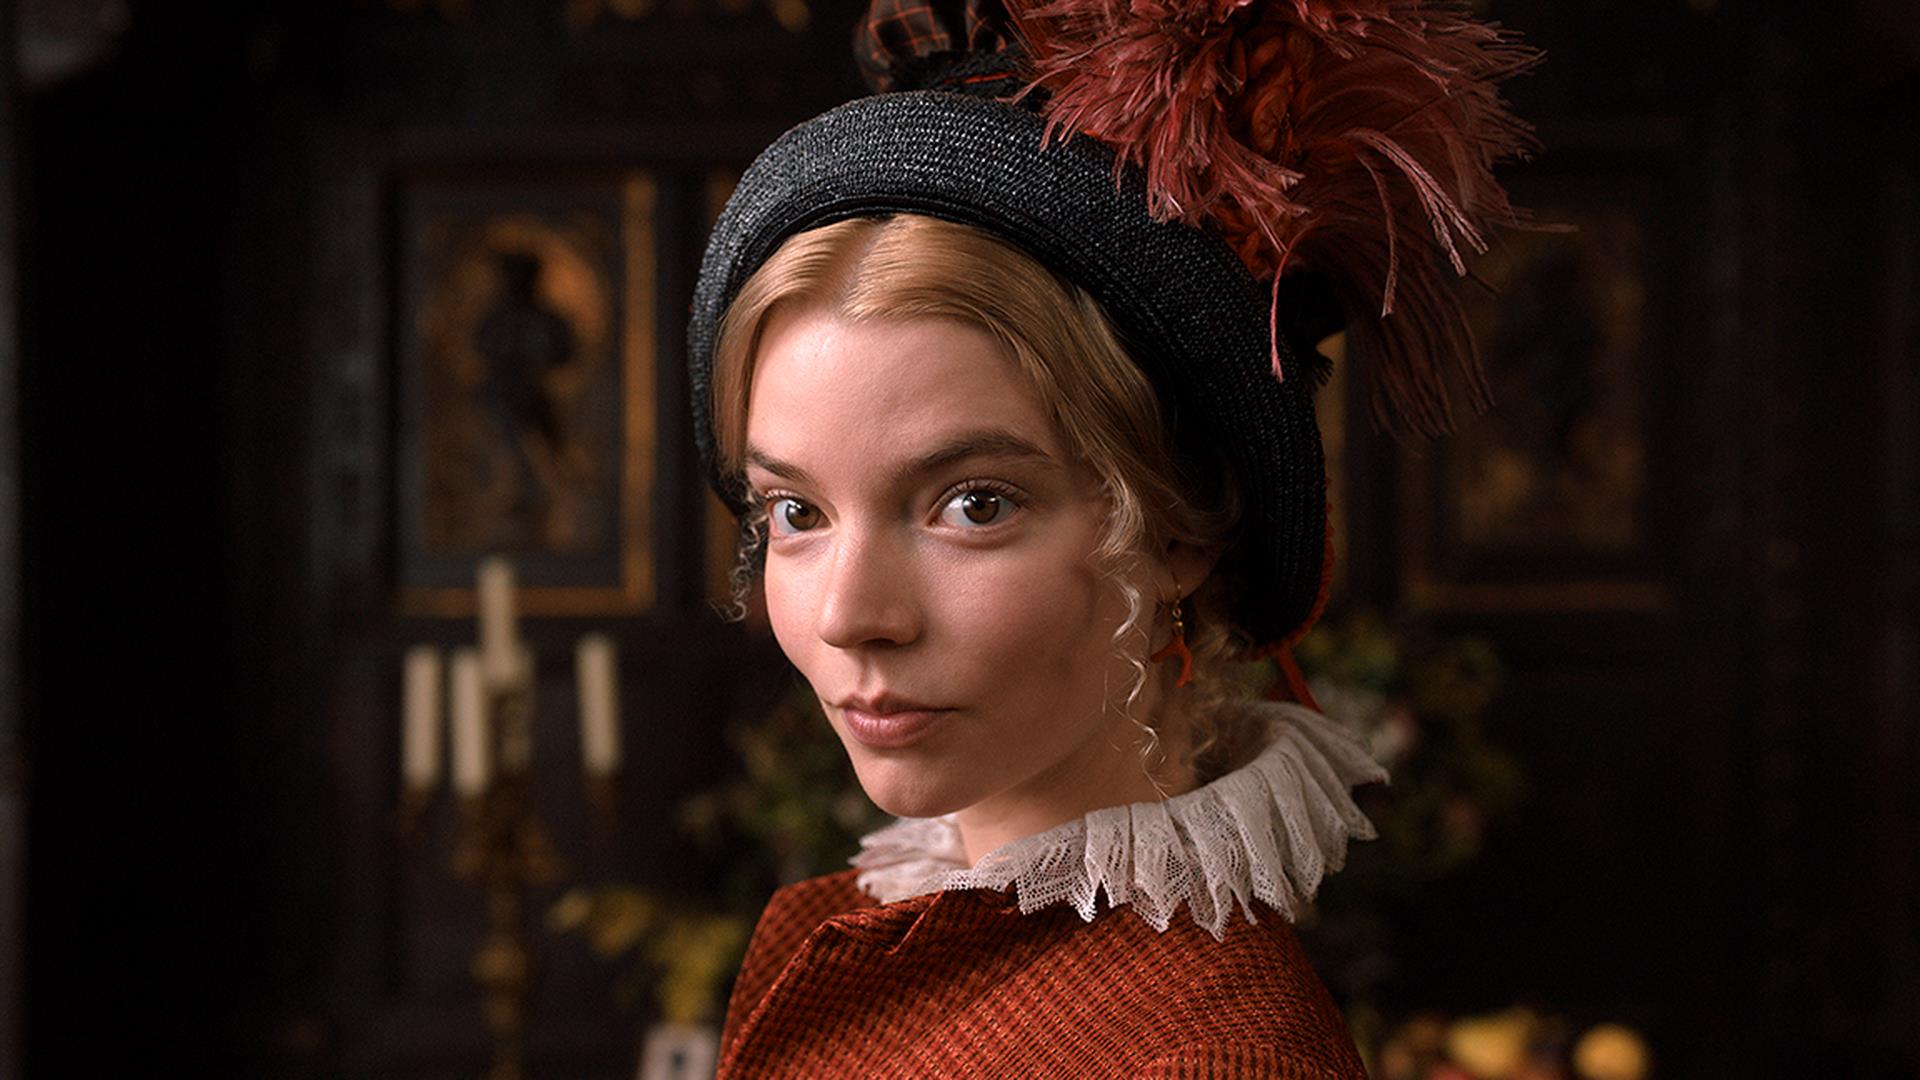 آنیا تیلور جوی با کلاه زیبا و لباس قدیمی در فیلم Emma، محصول سال ۲۰۲۰ میلادی